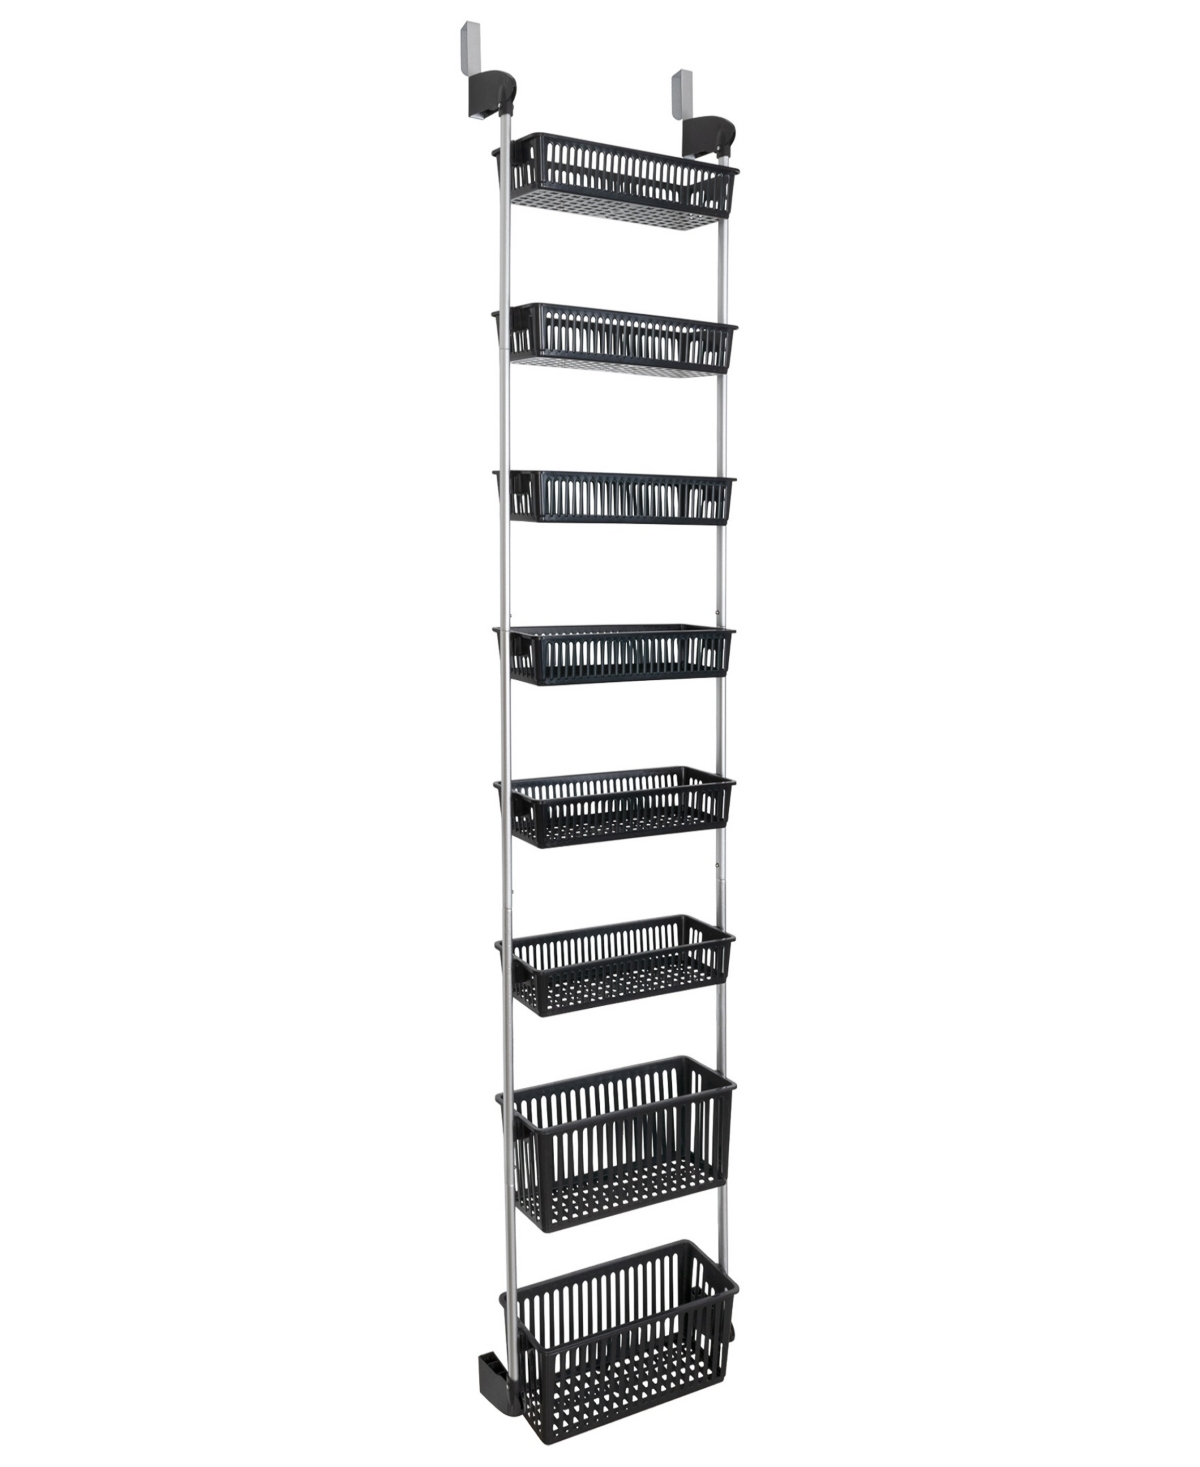 Smart Design 8-tier Over-the-door Hanging Pantry Organizer In Black